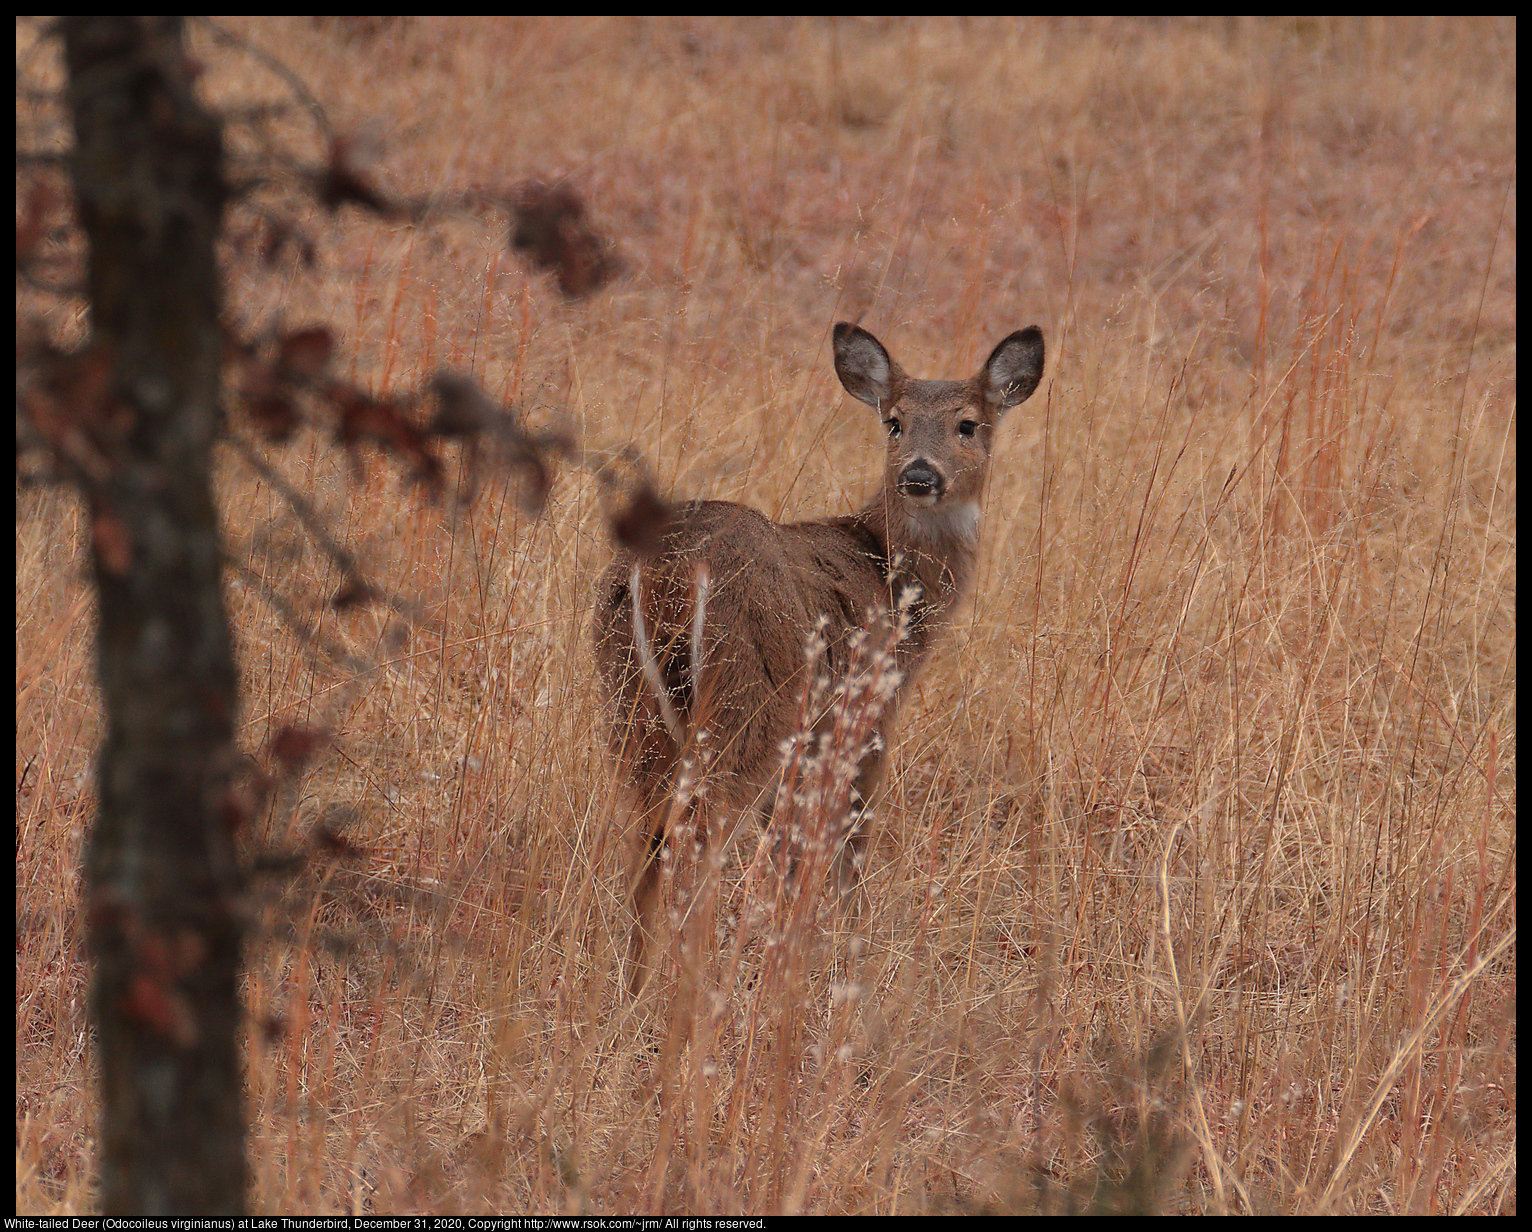 White-tailed Deer (Odocoileus virginianus) at Lake Thunderbird, December 31, 2020